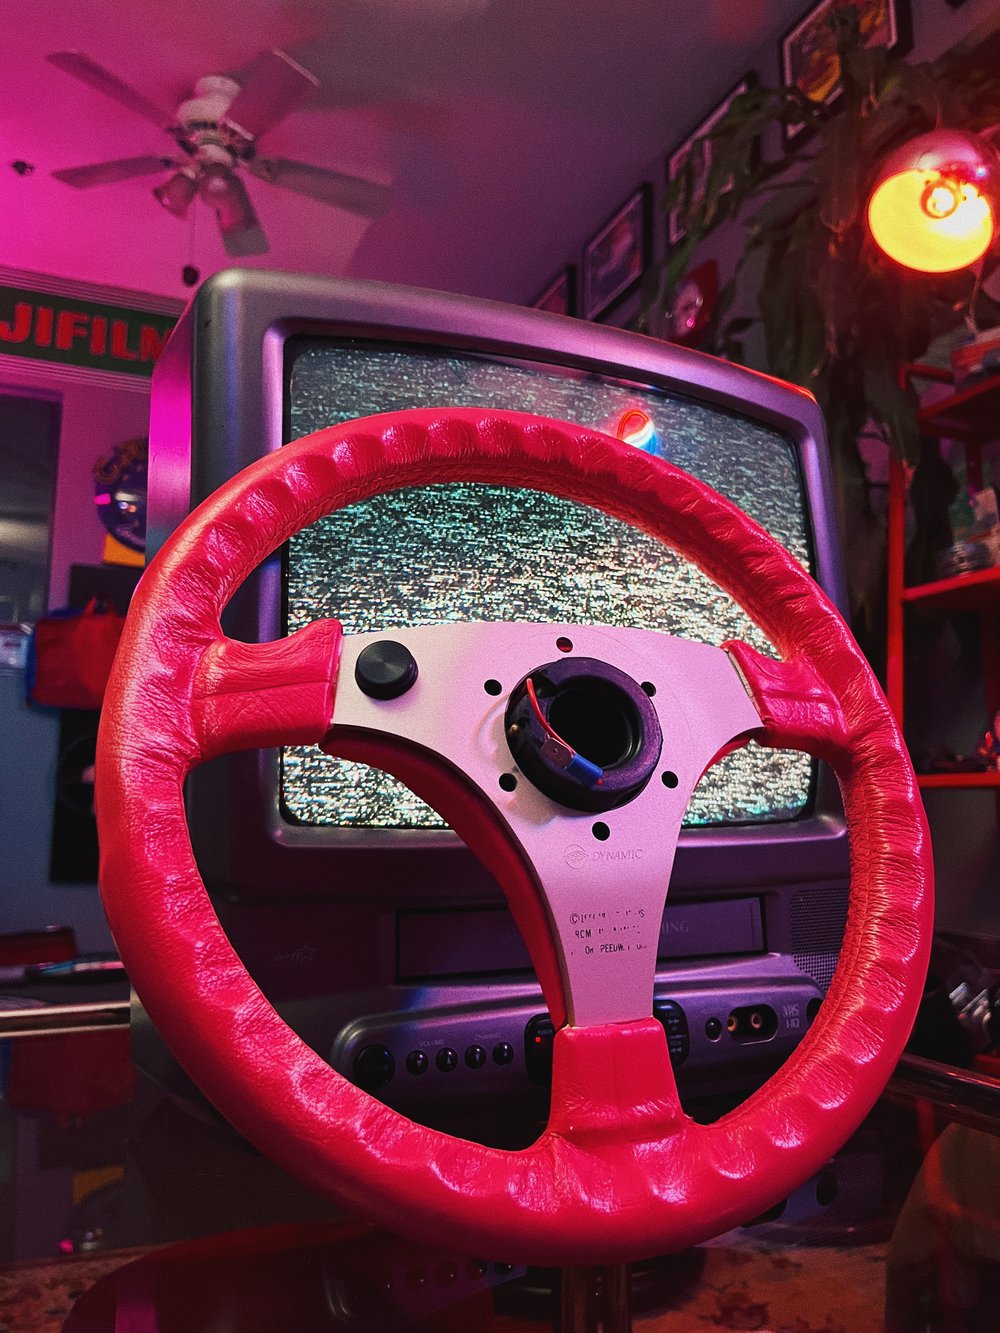 Indy 500 Steering Wheel (315mm)